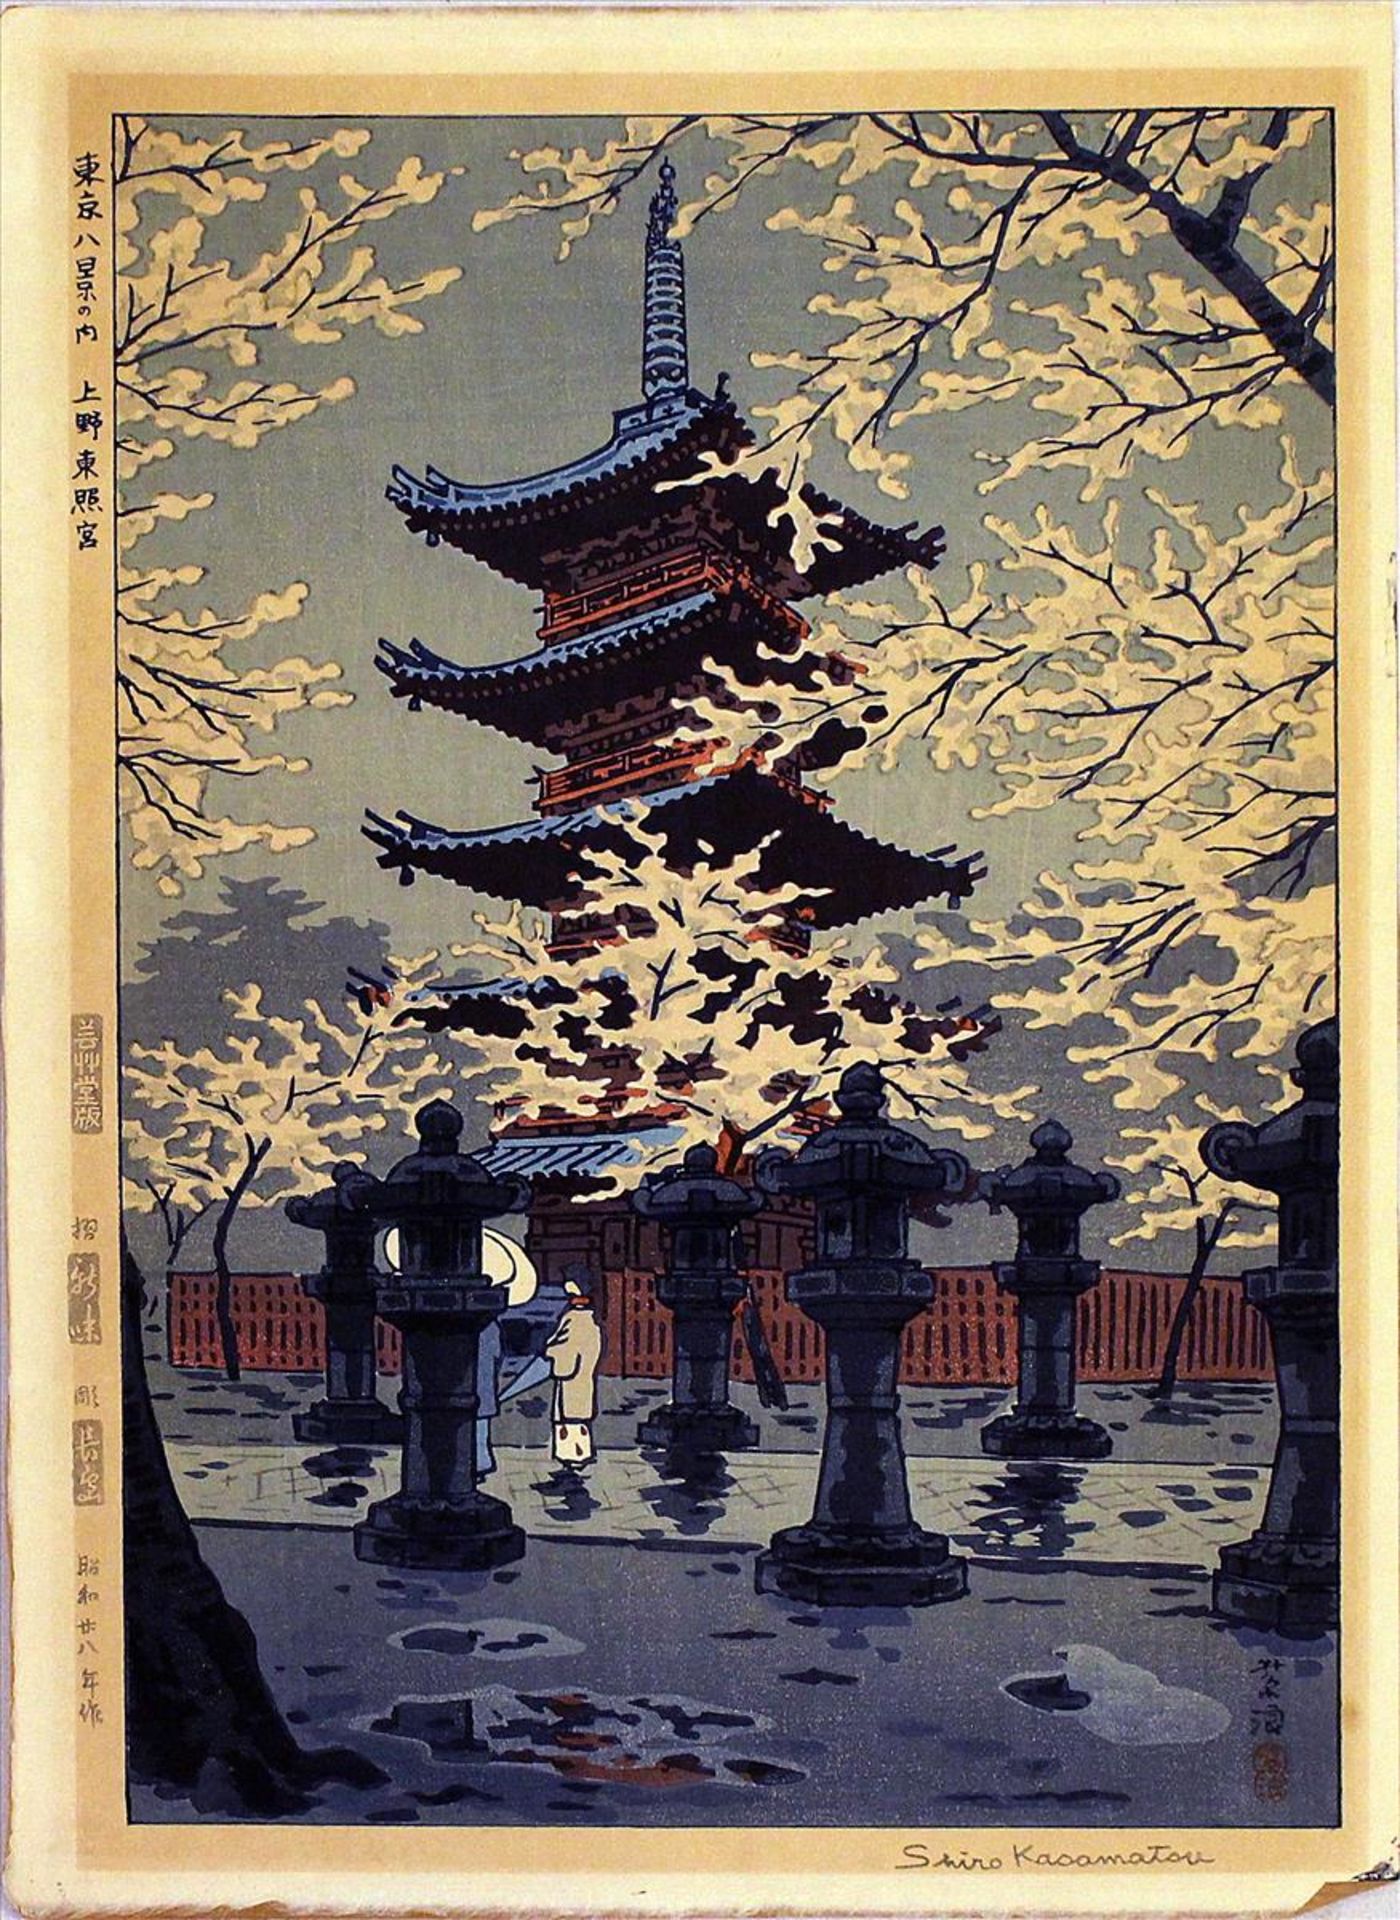 Kasamatsu, Shiro (1898 Tokio 1991)